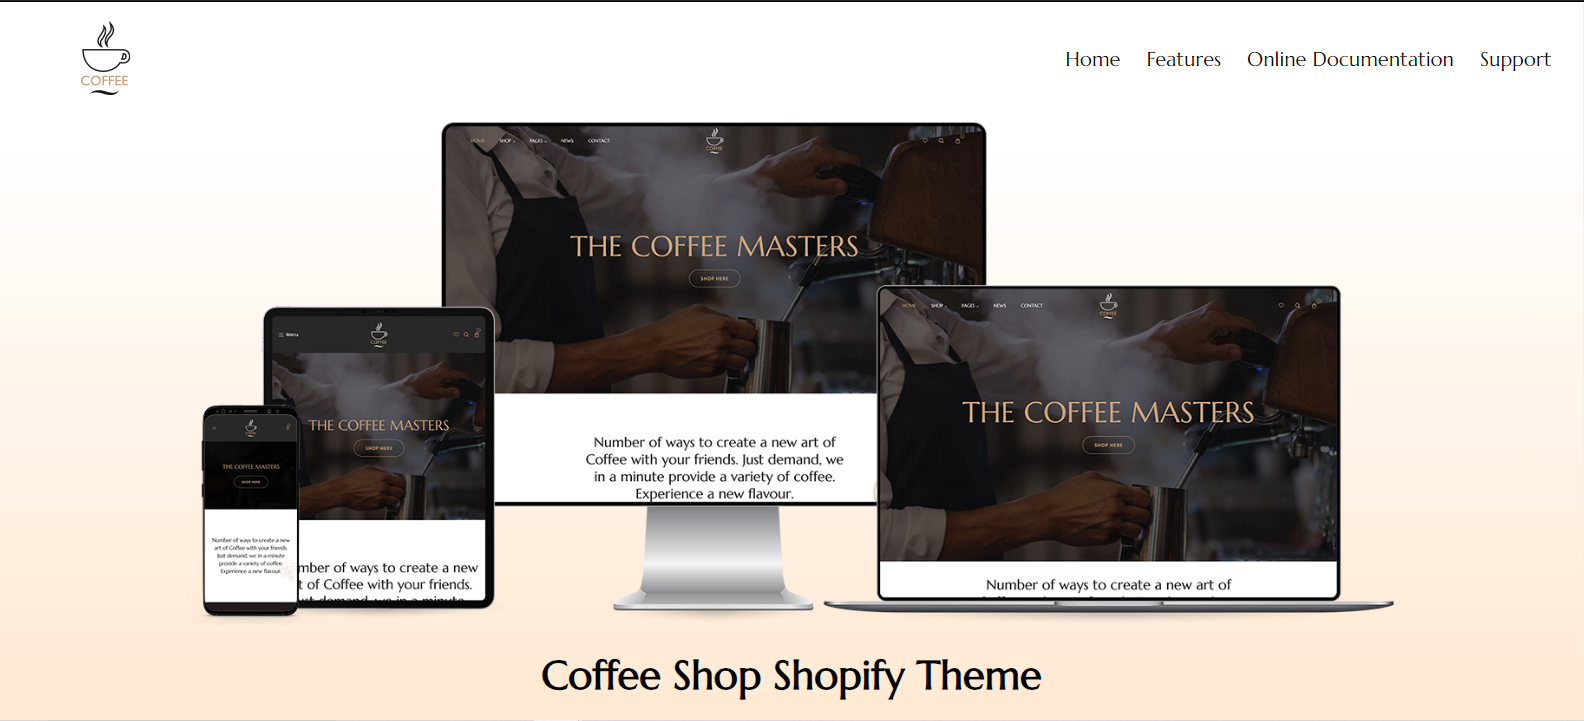 Kopiko v1.1 - Coffee Shop Shopify Theme